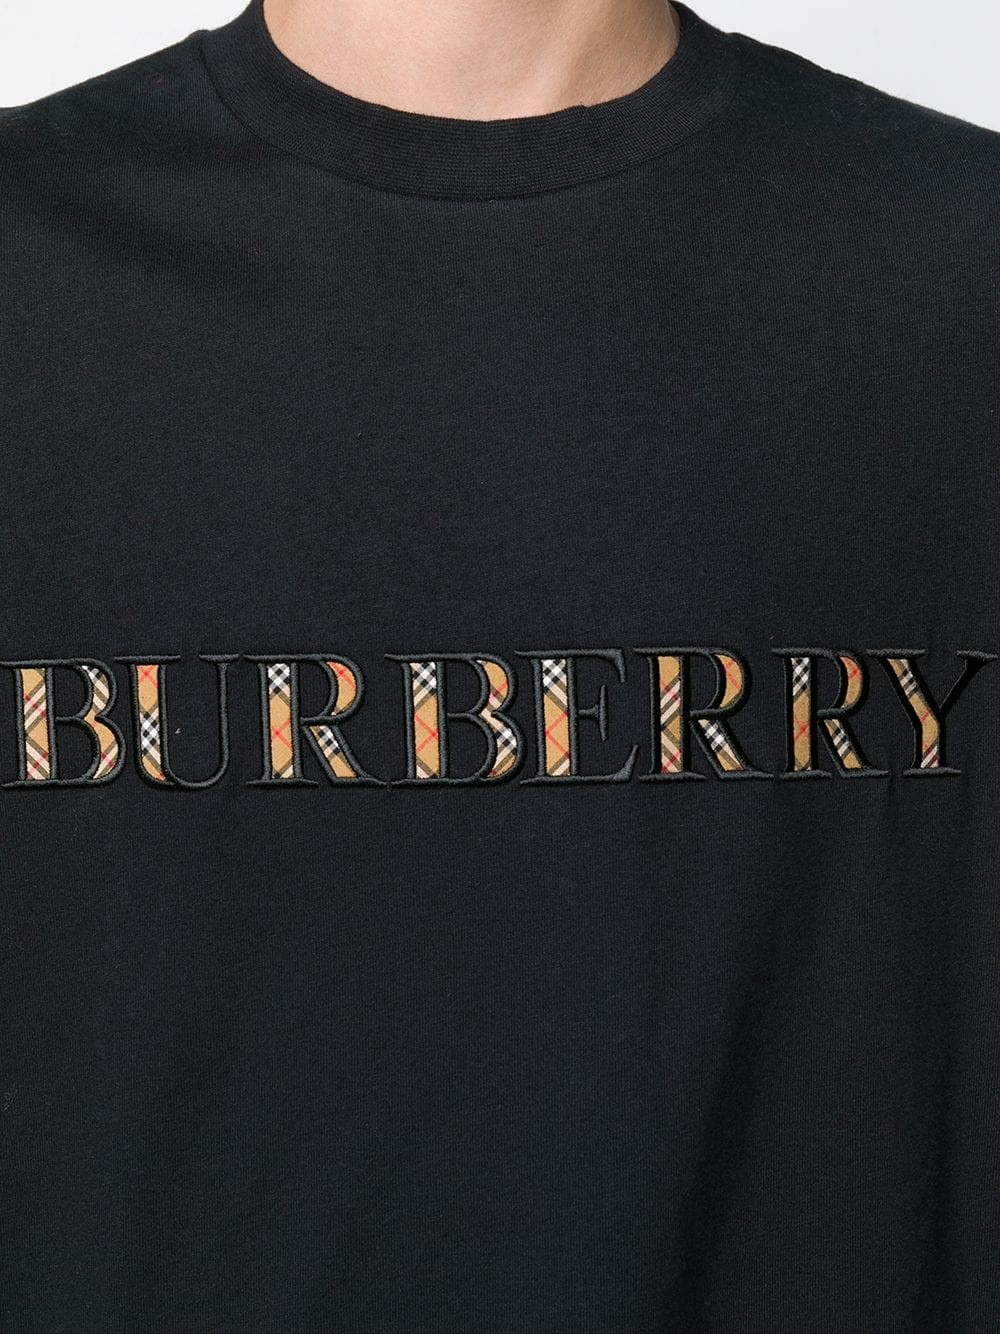 burberry sabeto t shirt